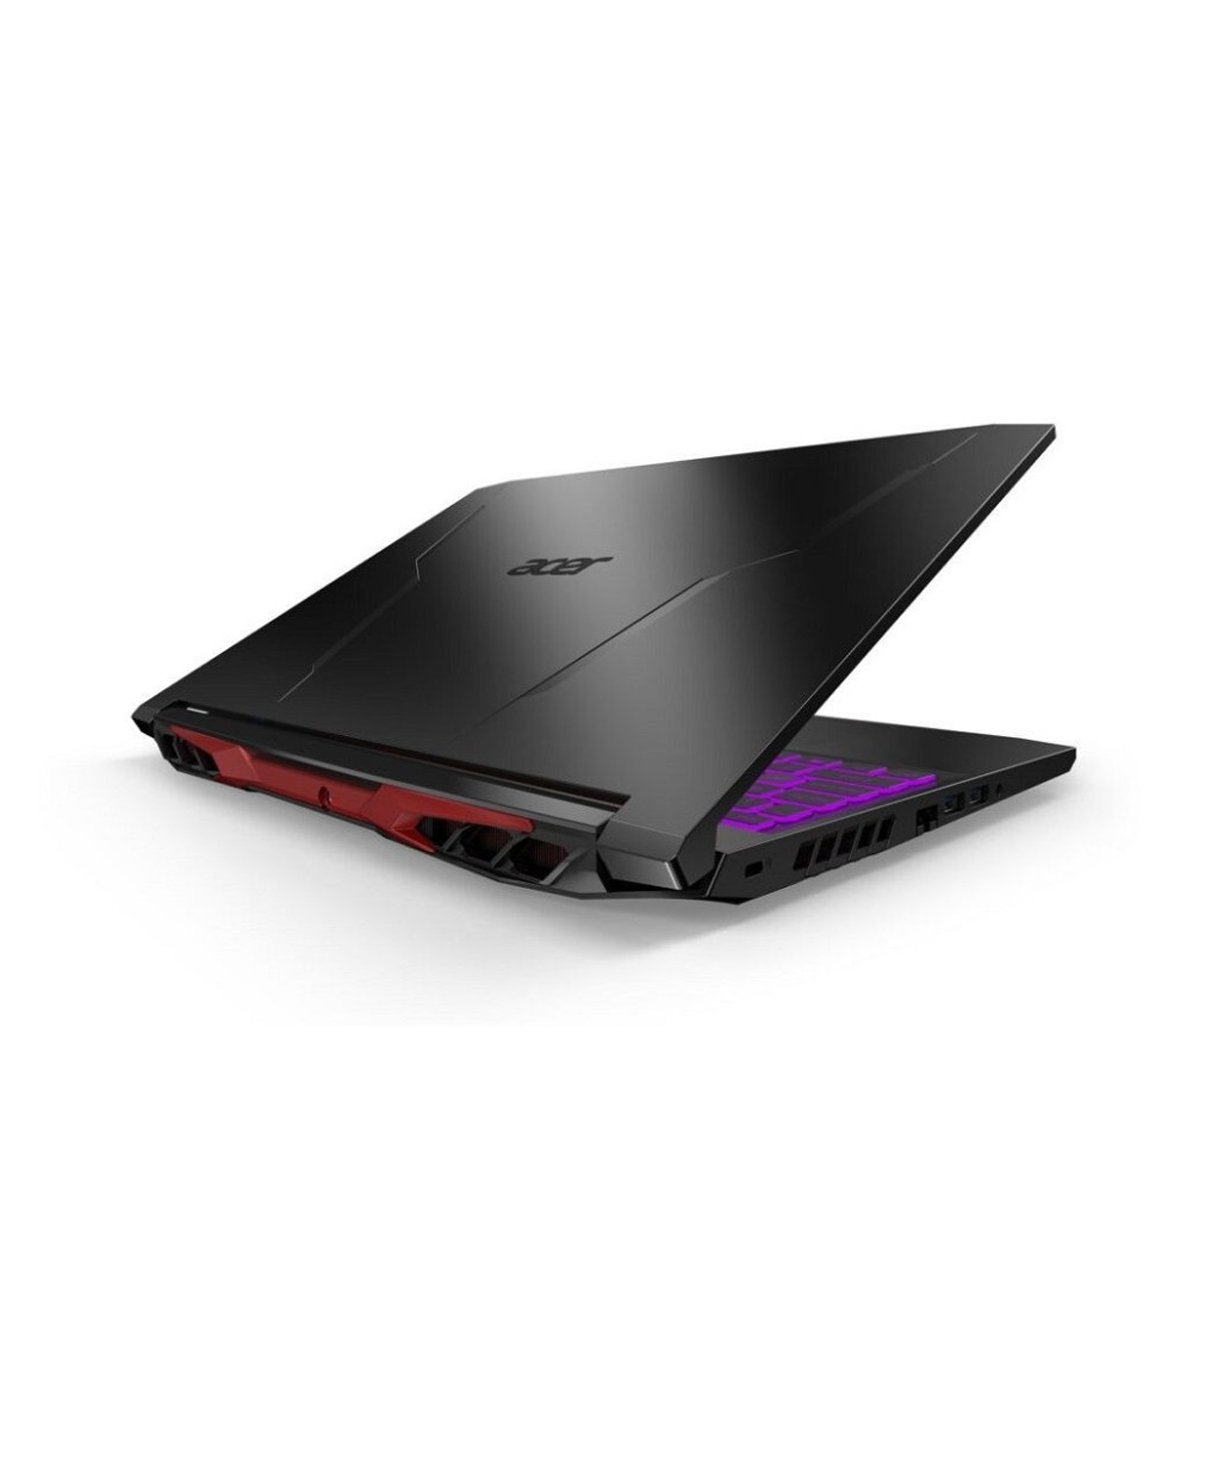 Նոութբուք Acer Nitro 5 AN515 (8GB, 512GB SSD, Ryzen 7 5800H, 15.6` 1920x1080 FullHD, black)